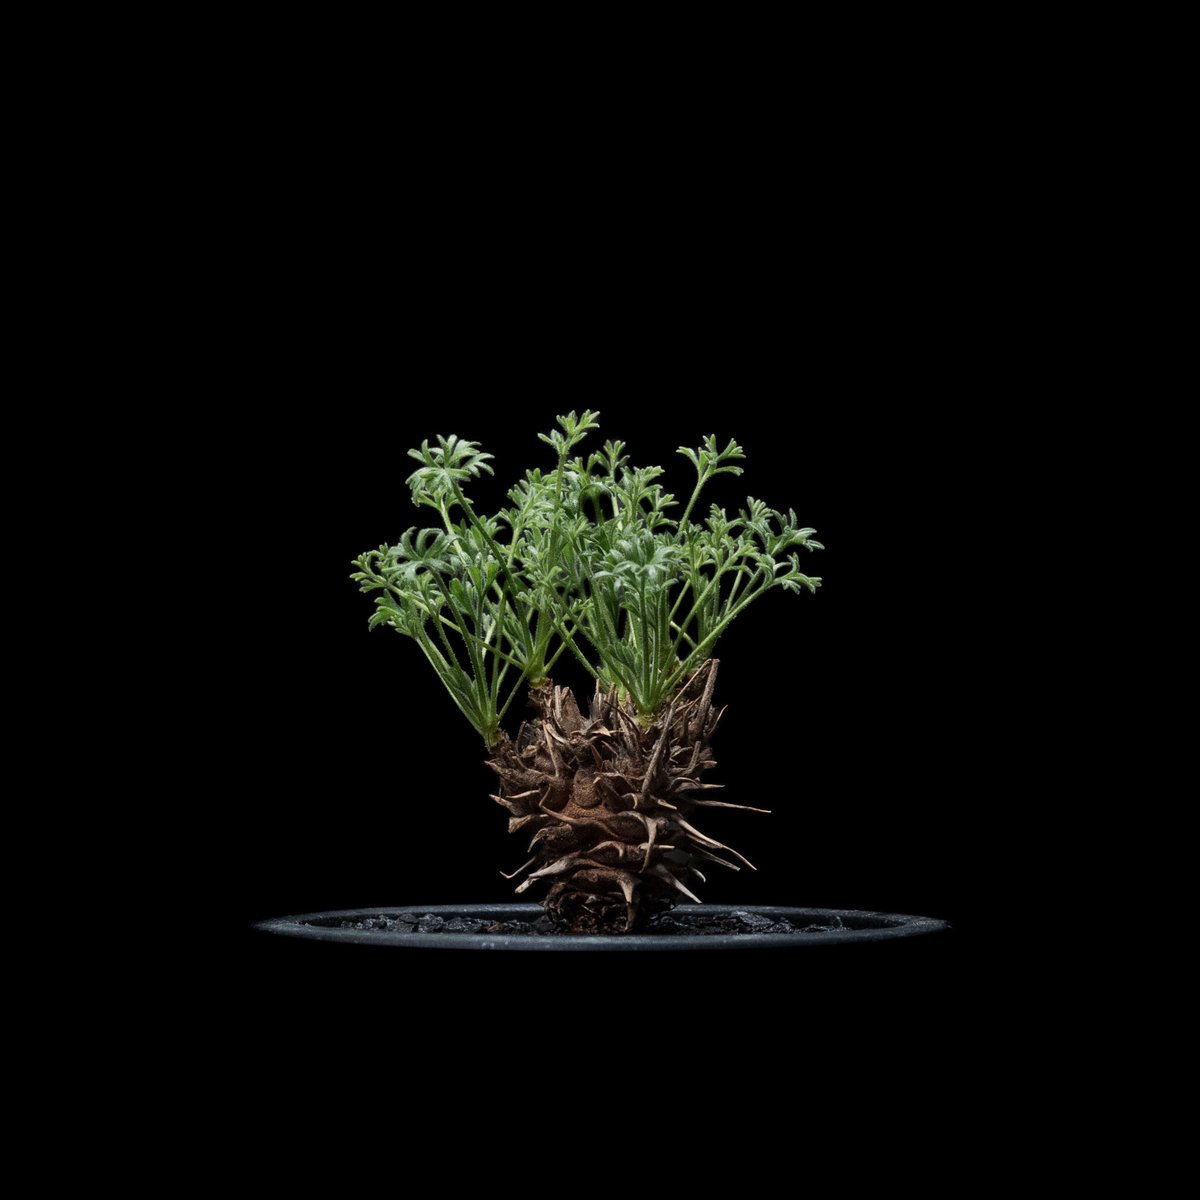 ペラルゴニウム ヒストリクス / Pelargonium hystrix #1 | Ducks...